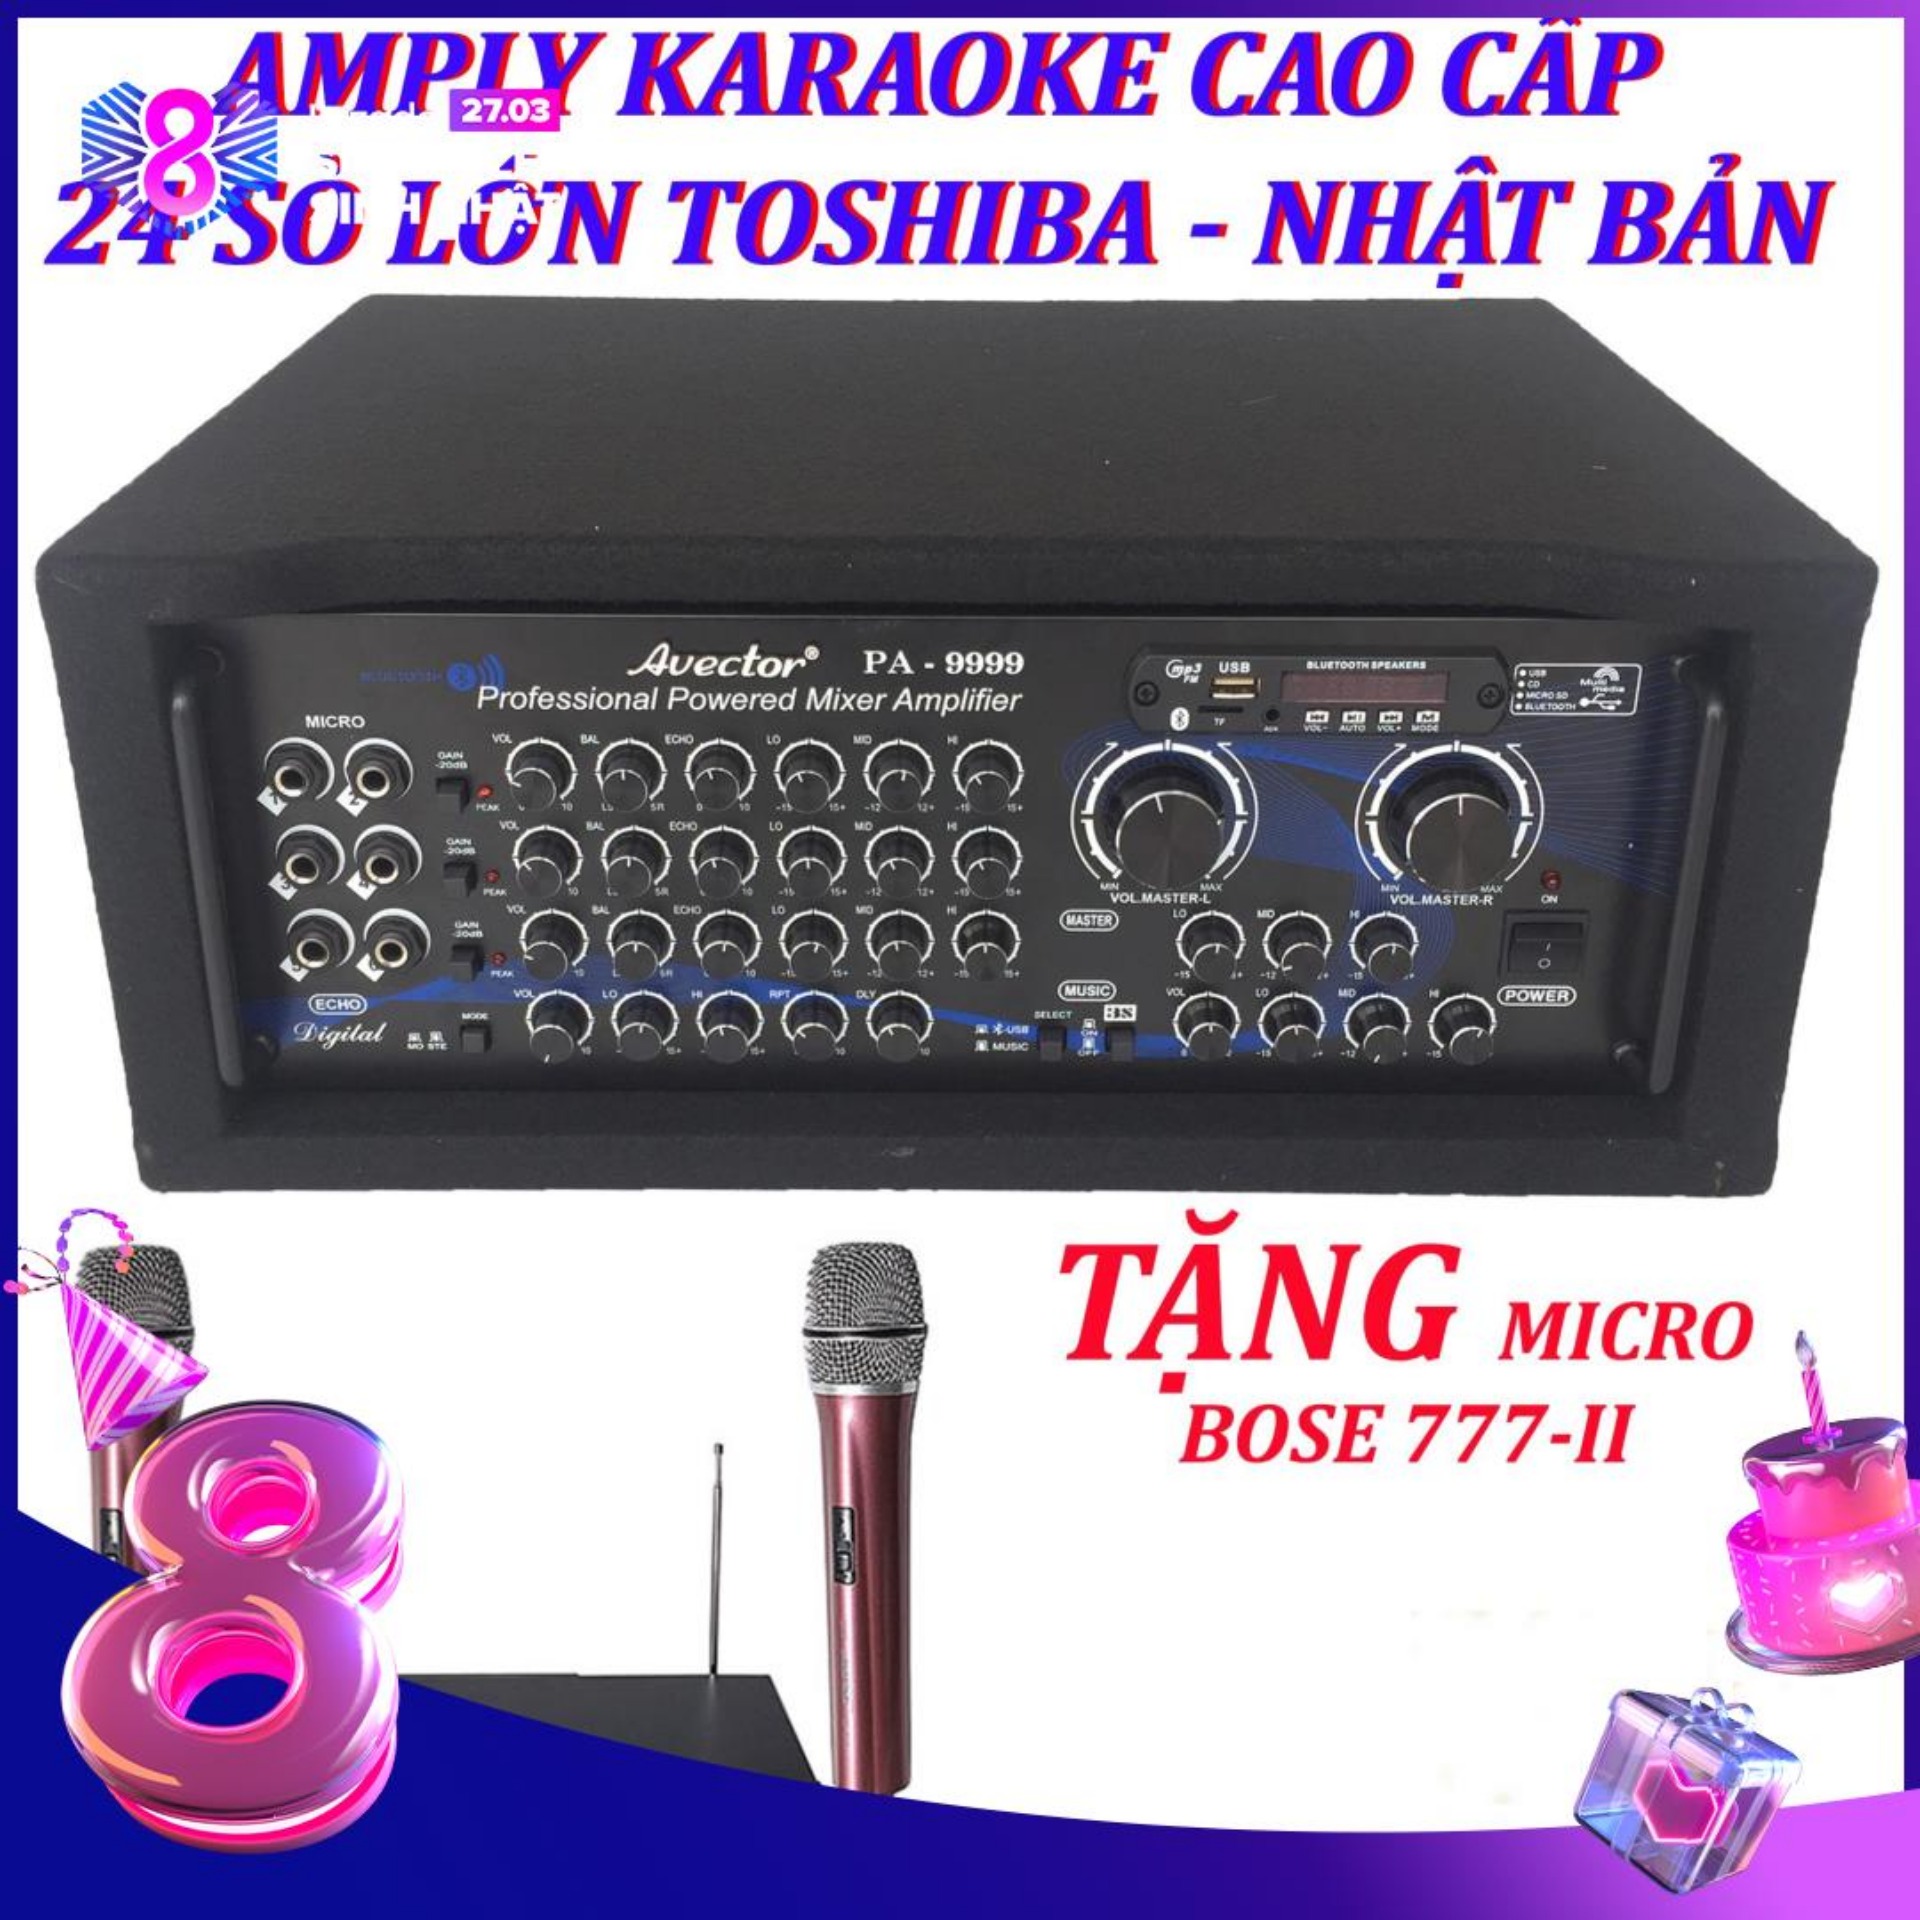 [Trả góp 0%]Amply karaoke gia đình - Amply bluetooth - amply sân khấu - amply nghe nhạc cao cấp công suất lớn Avector PA-9999 24 Sò toshiba nhật bản chính hãng TẶNG MICRO BS-777II